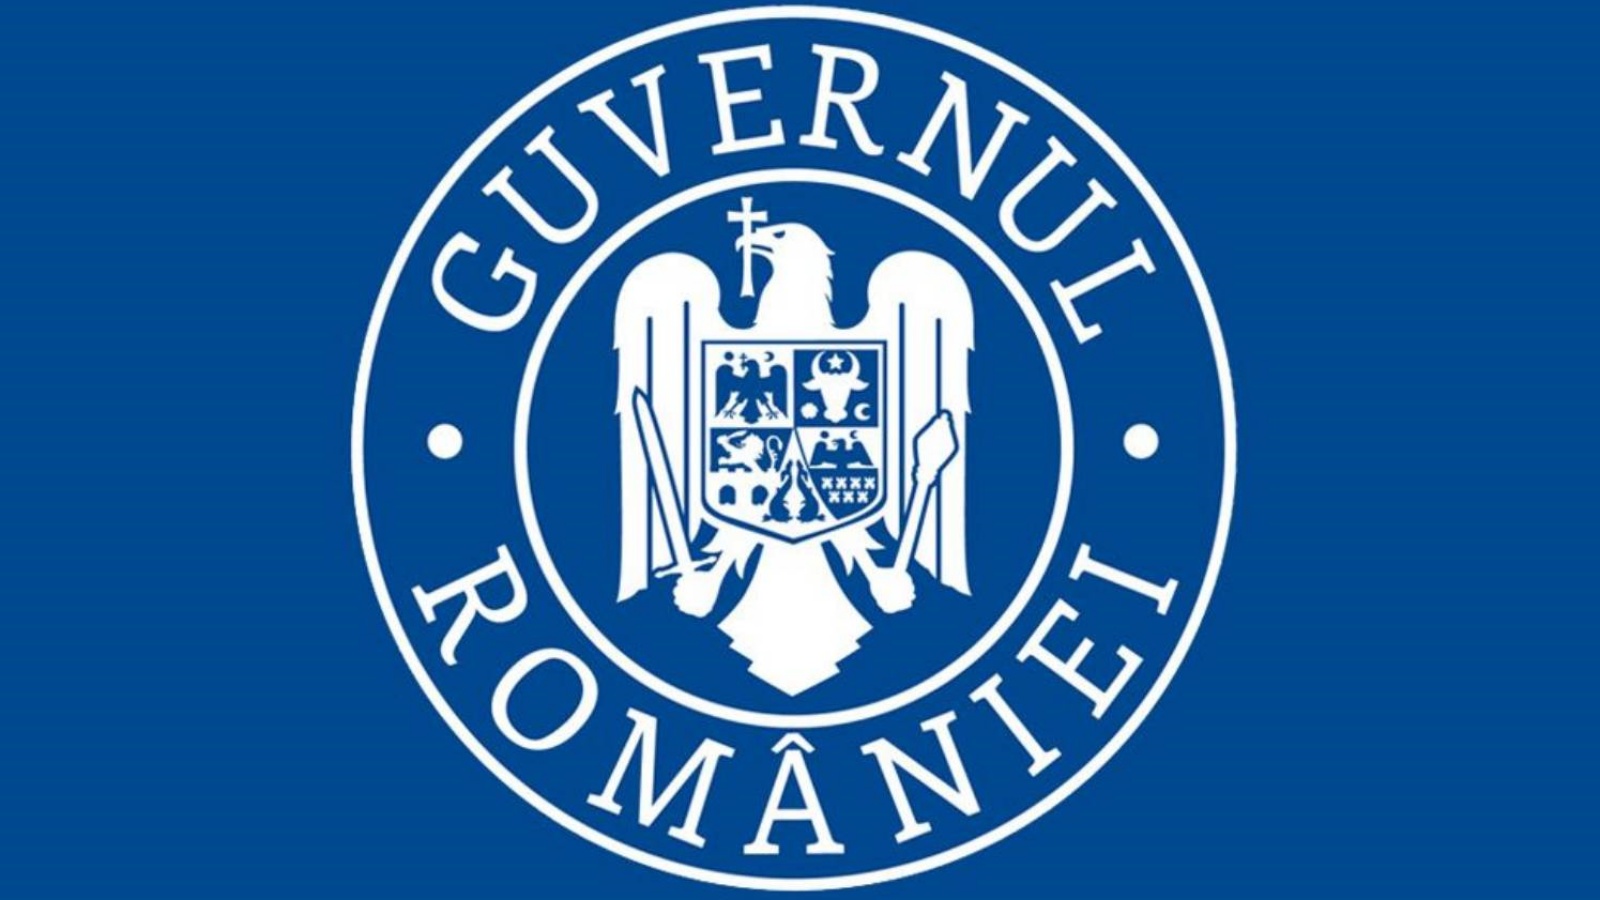 Den rumænske regering ønsker at hjælpe rumænere fra diasporaen med at få lettere adgang til europæiske midler